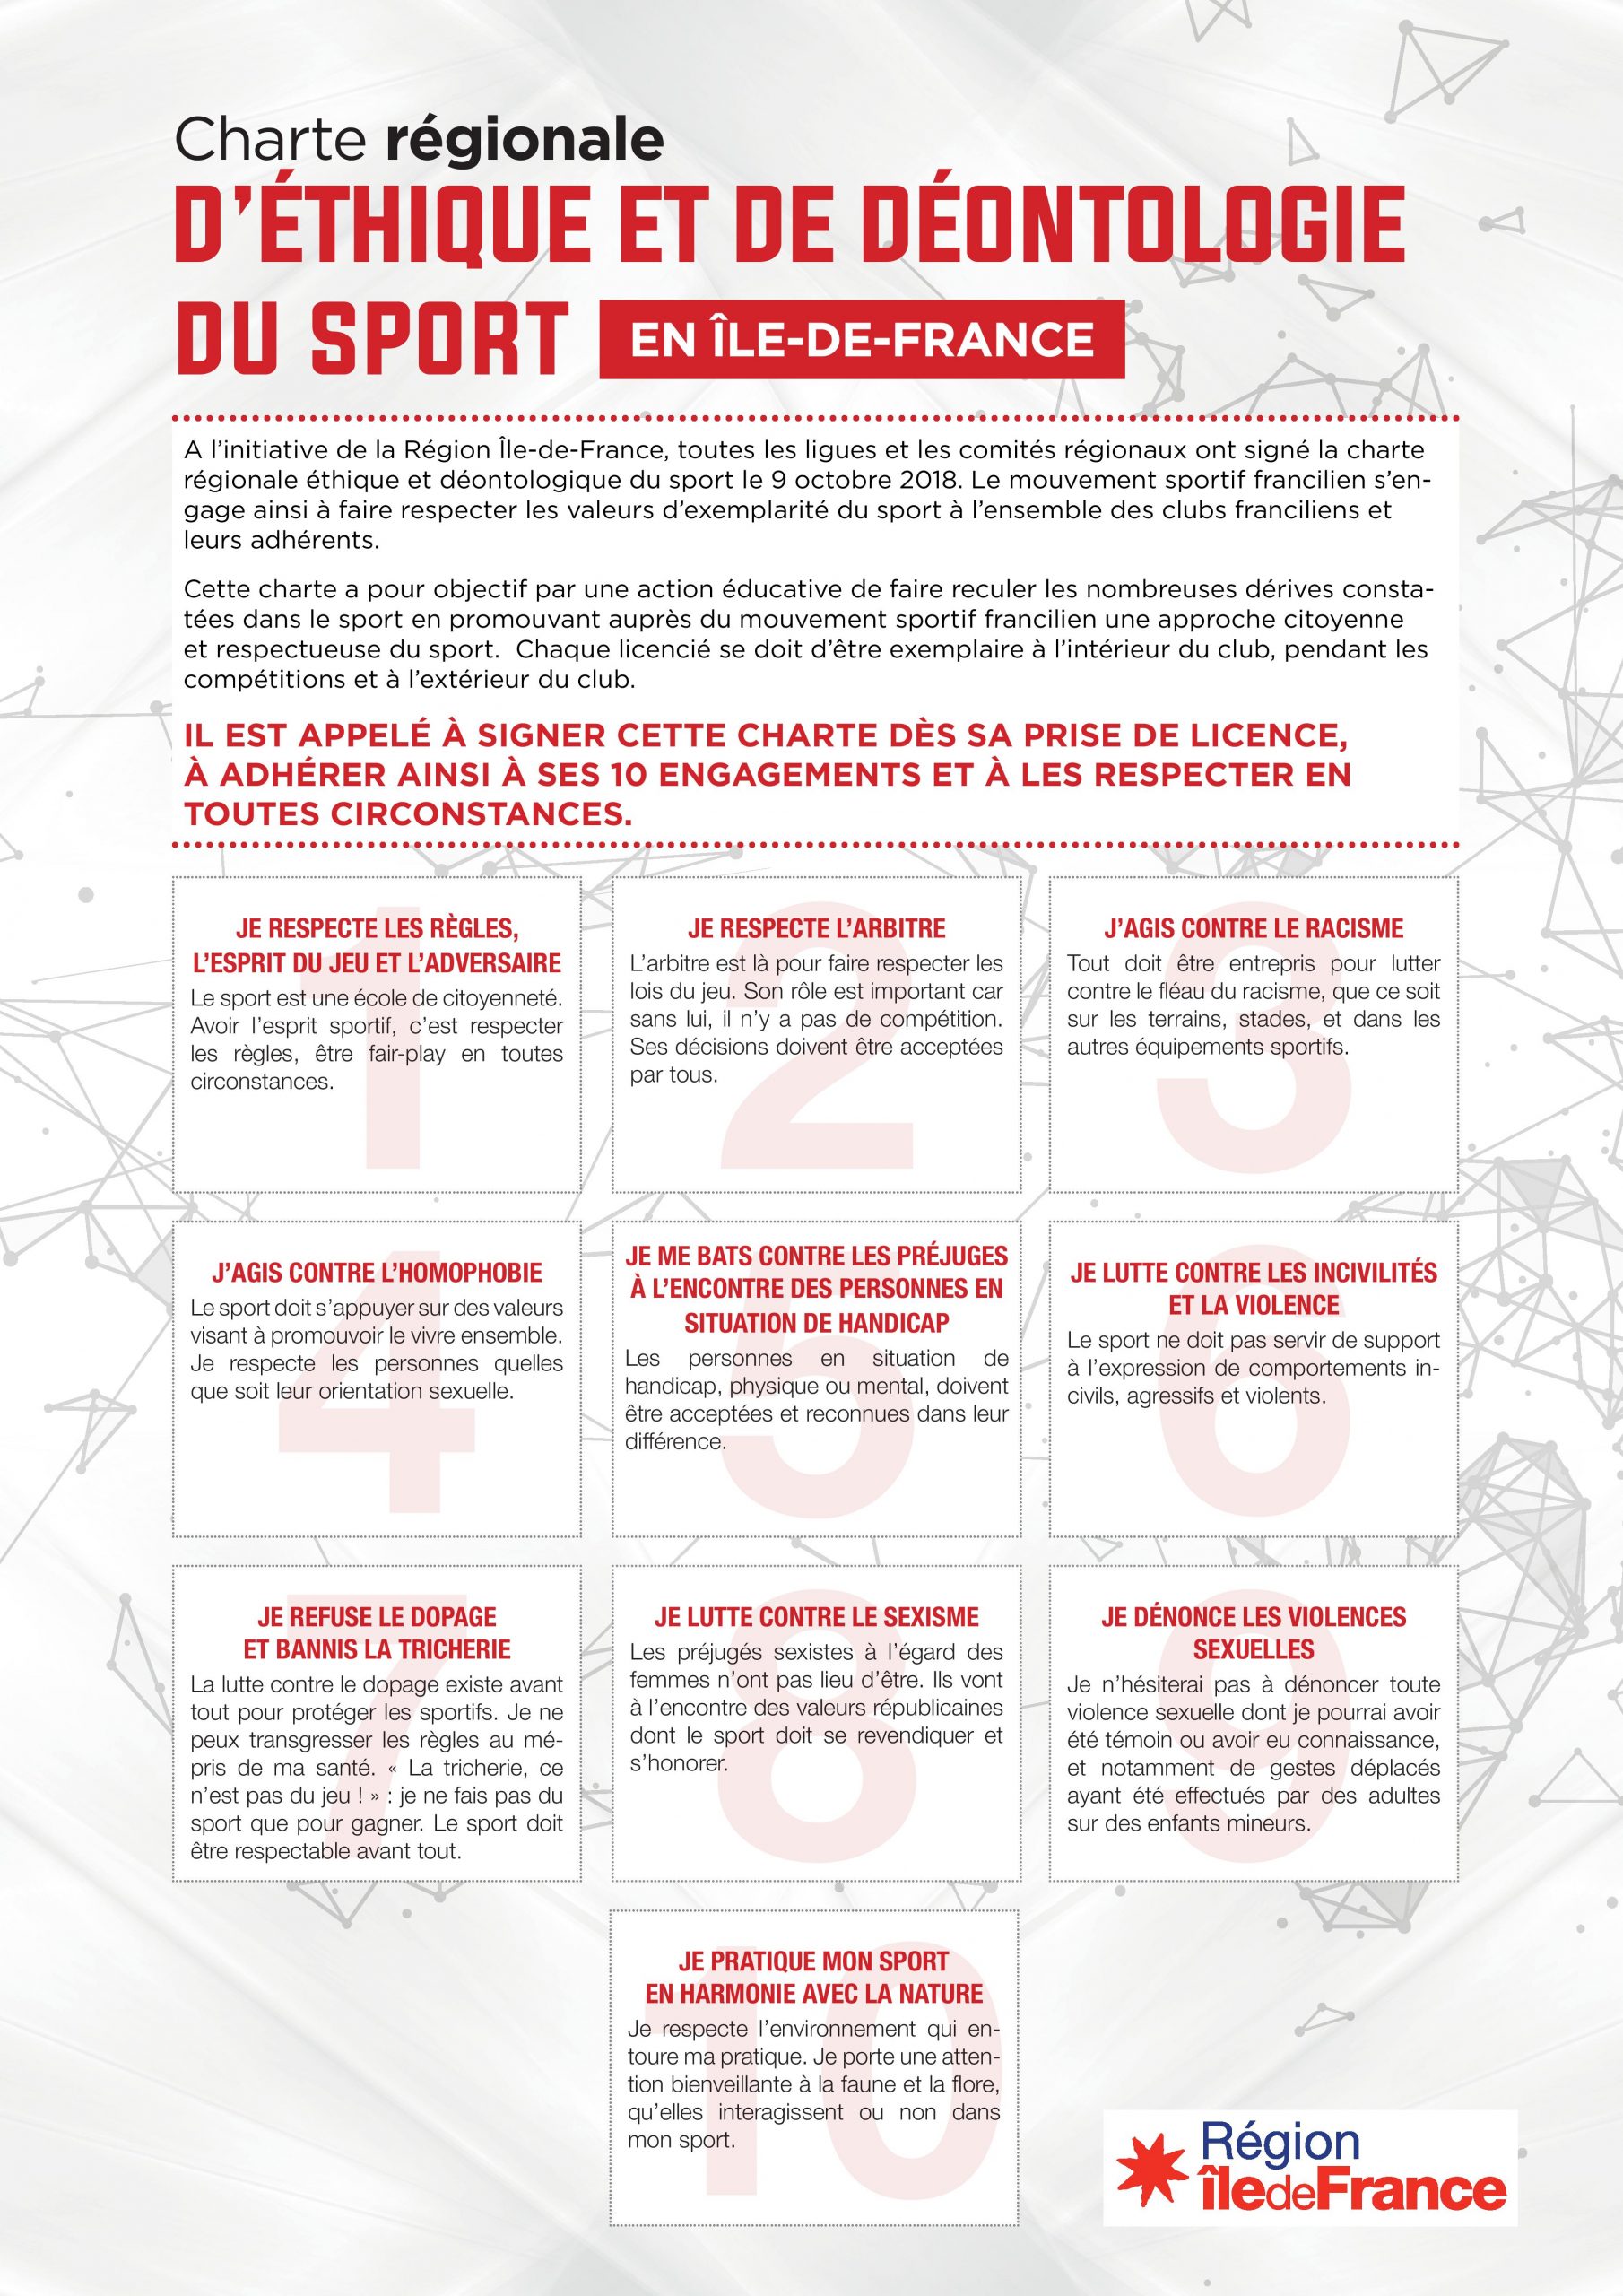 La charte Régionale d'éthique et de déontologie du sport en ile de France pour Sports Pour Tous